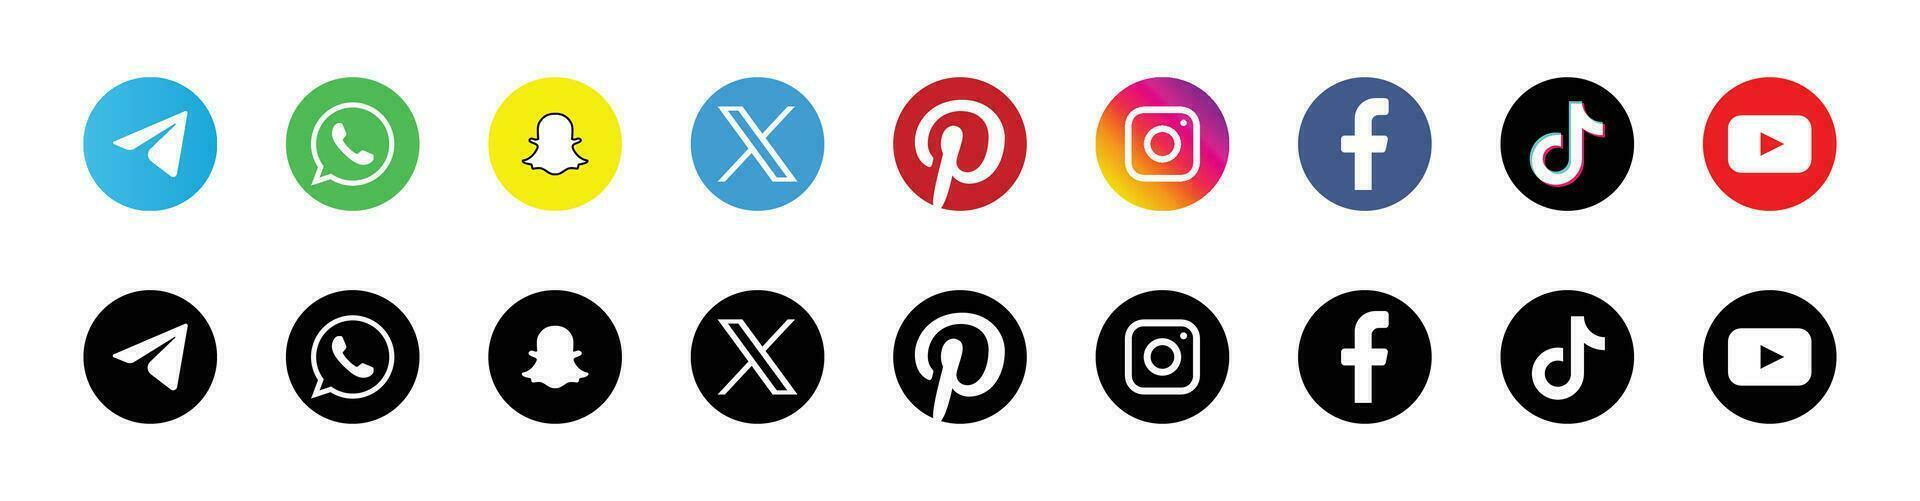 Major Social Media Brand Logos - Icons for Facebook, Instagram, Twitter, YouTube vector